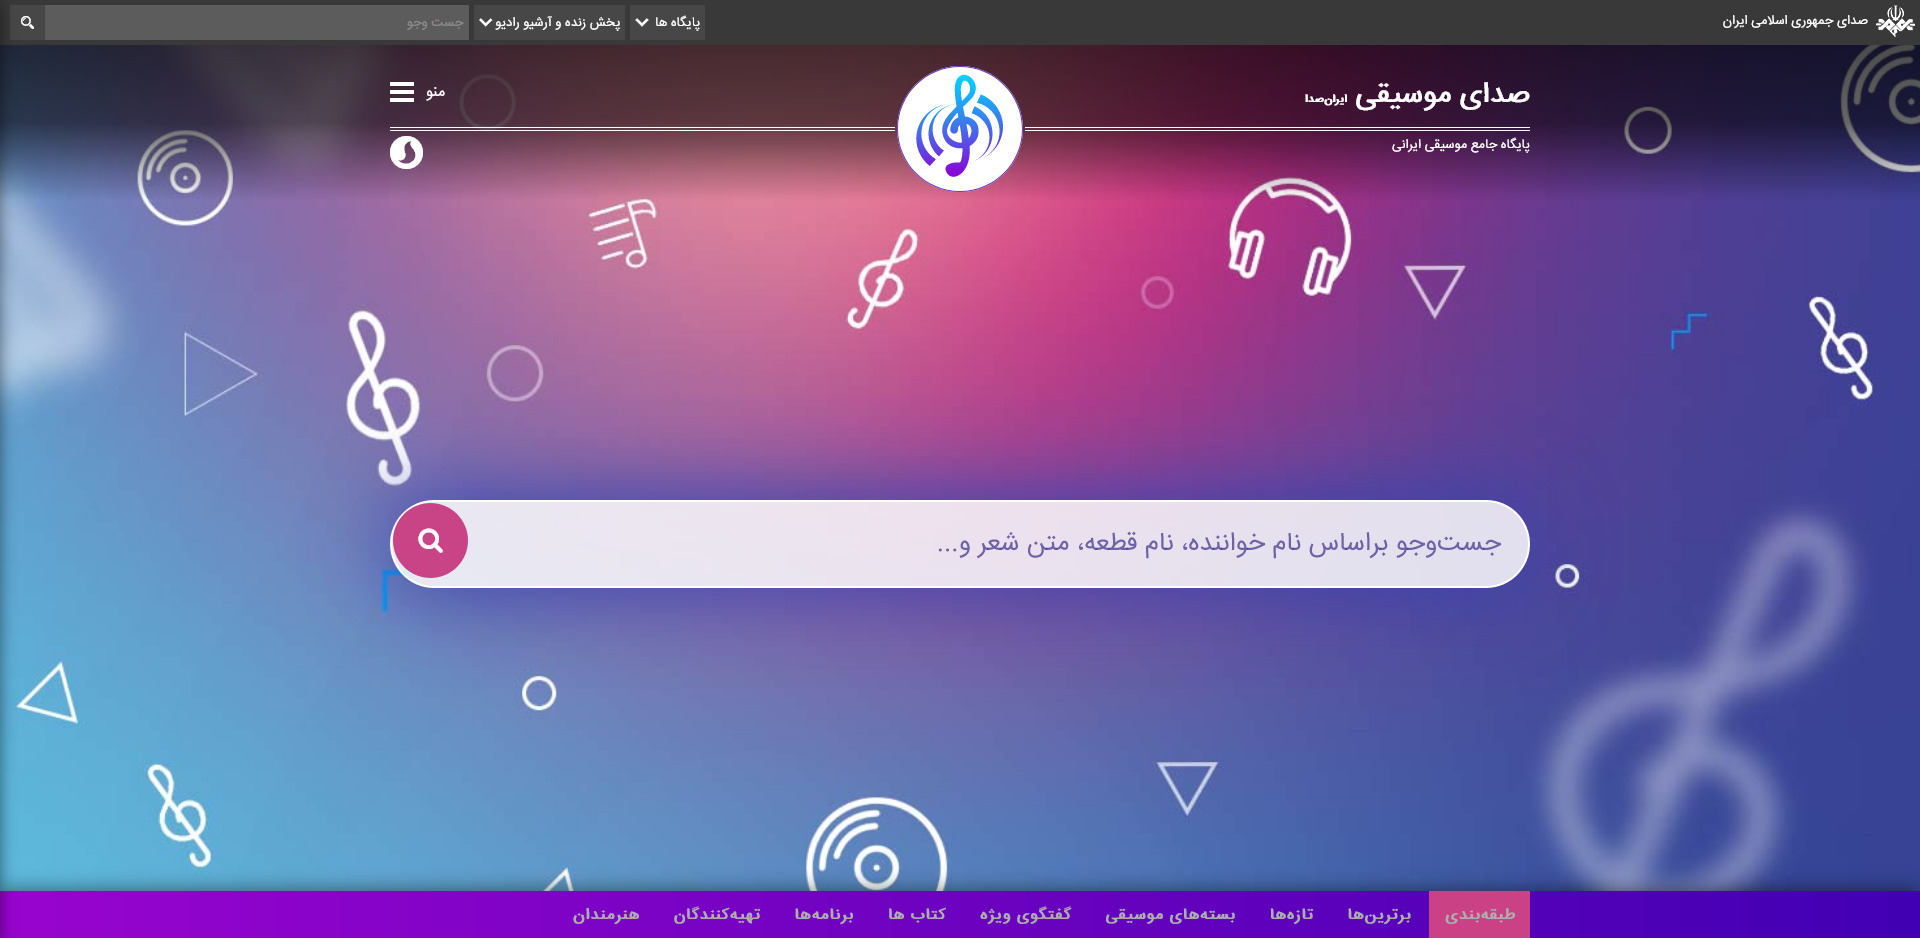 هدر وبسایت صدای موسیقی ایران صدا